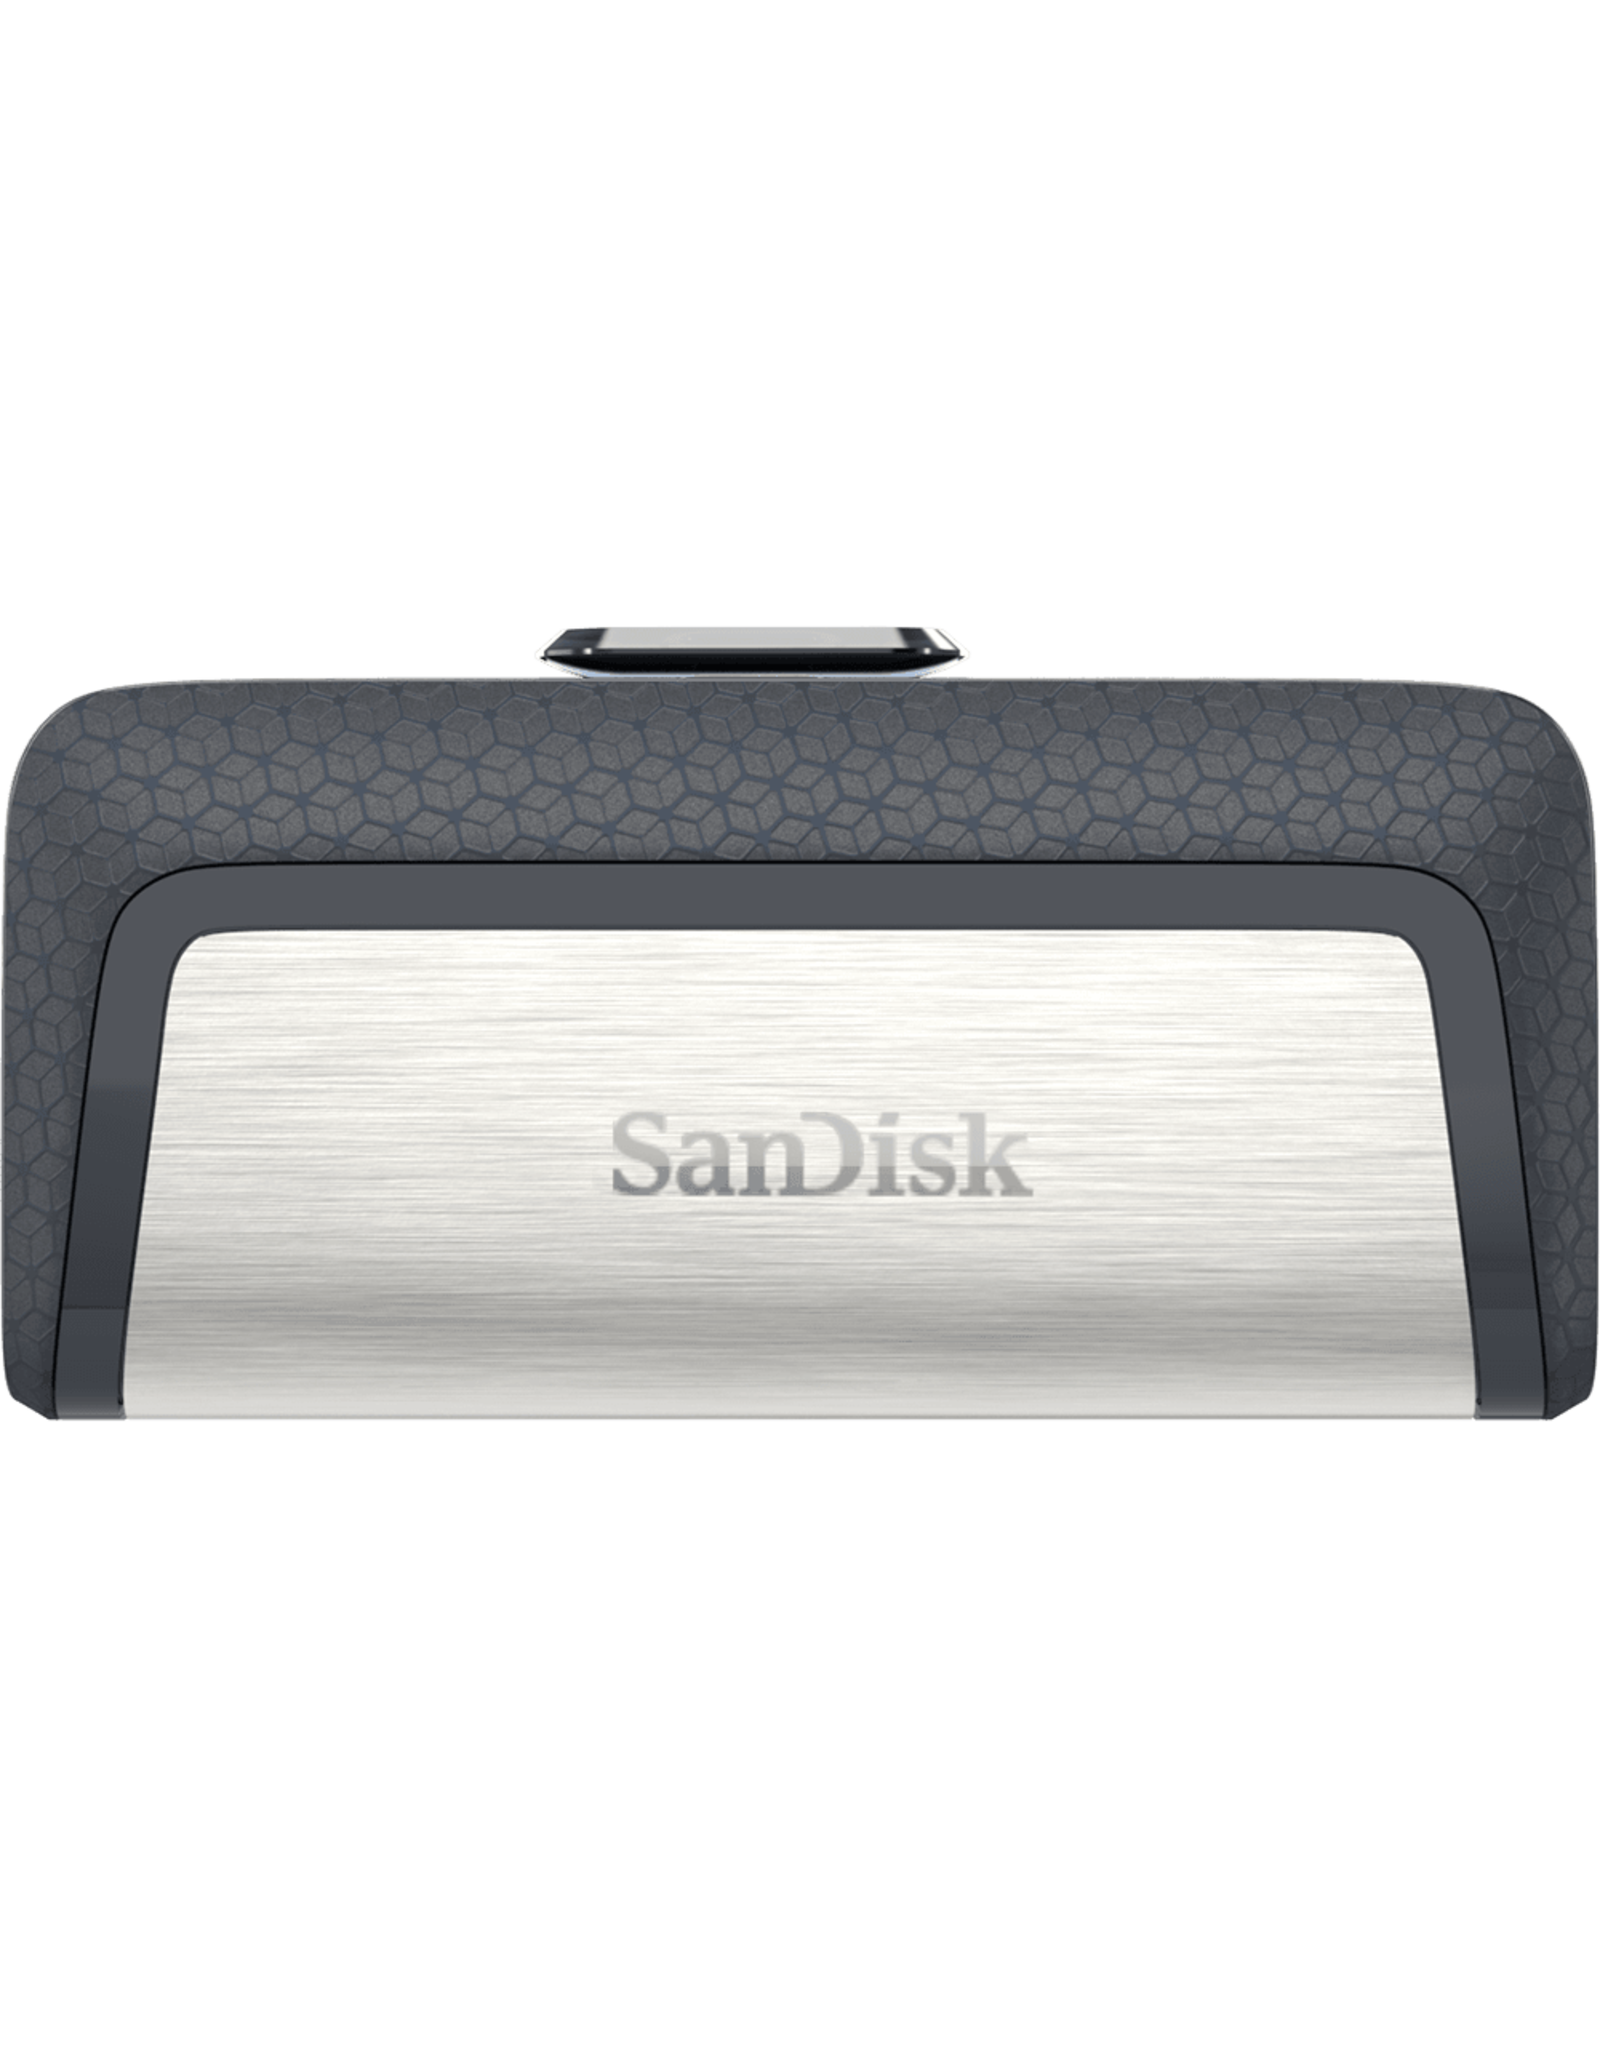 Kingston SanDisk Ultra Dual Drive 128GB USB-C/USB3.1